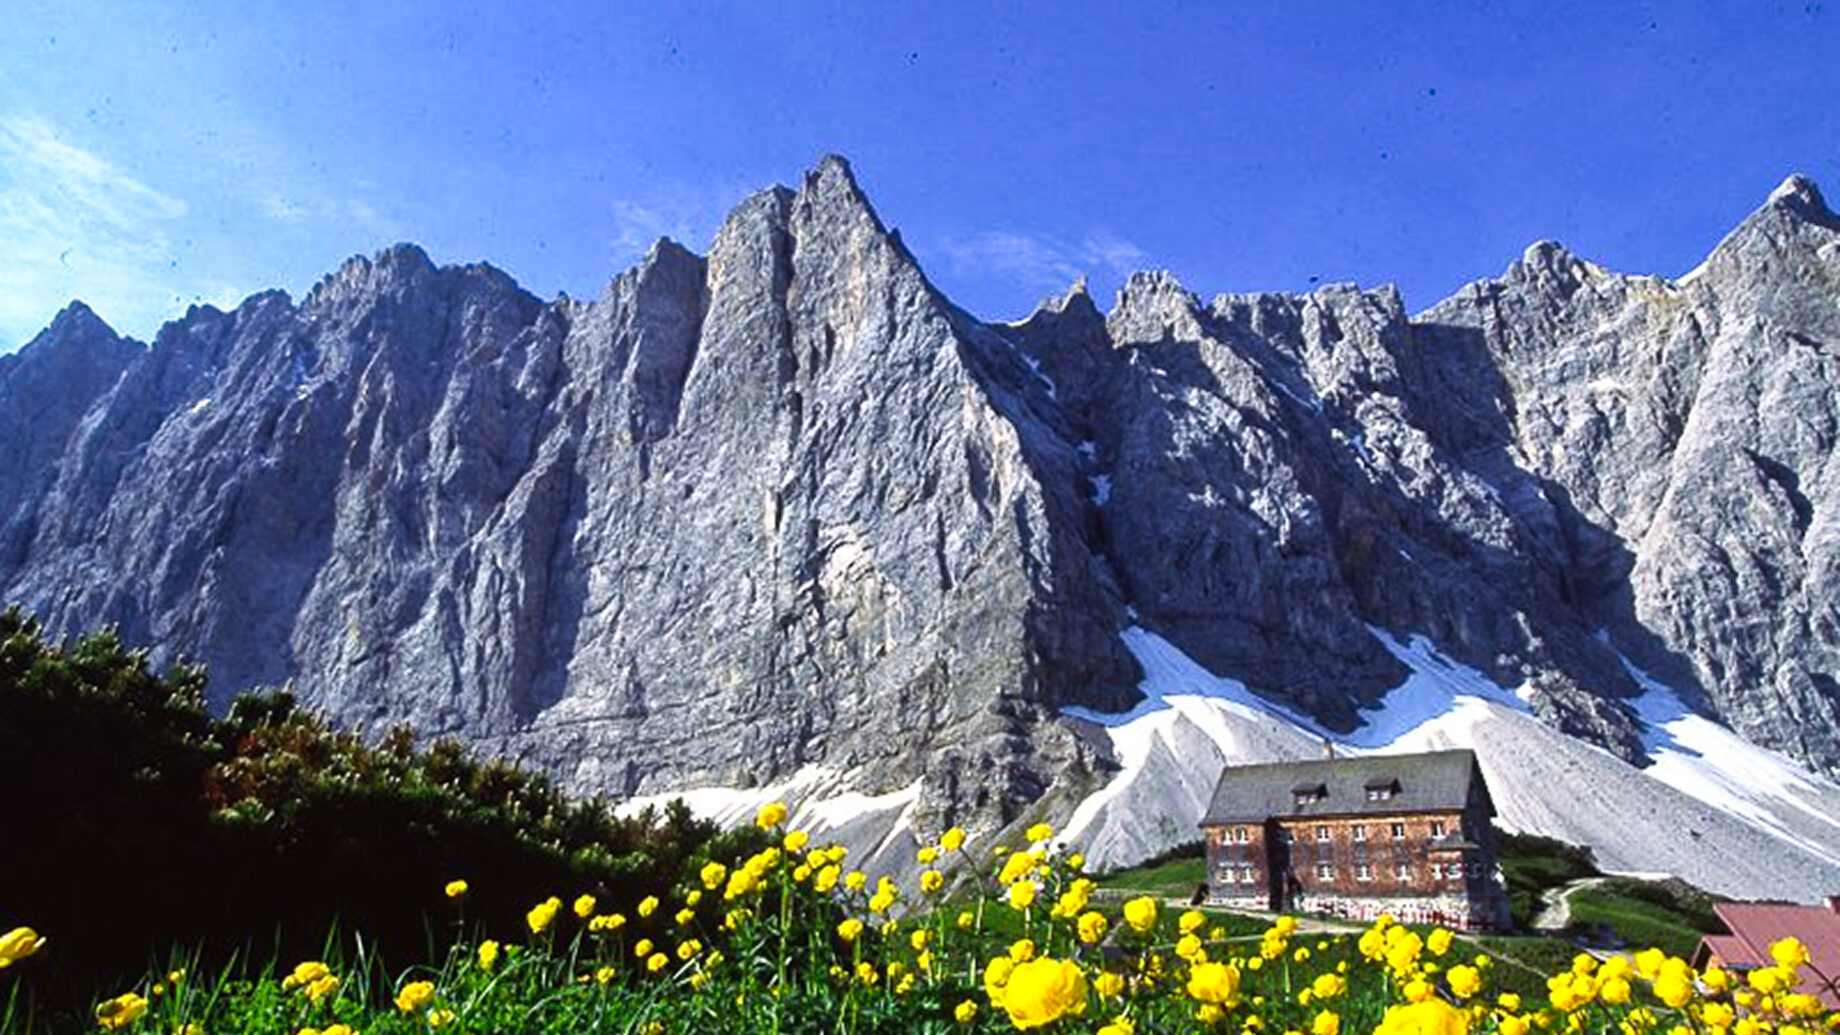 Die Falkenhütte vor den imposanten Lalidererwänden. Foto: O. Leiner